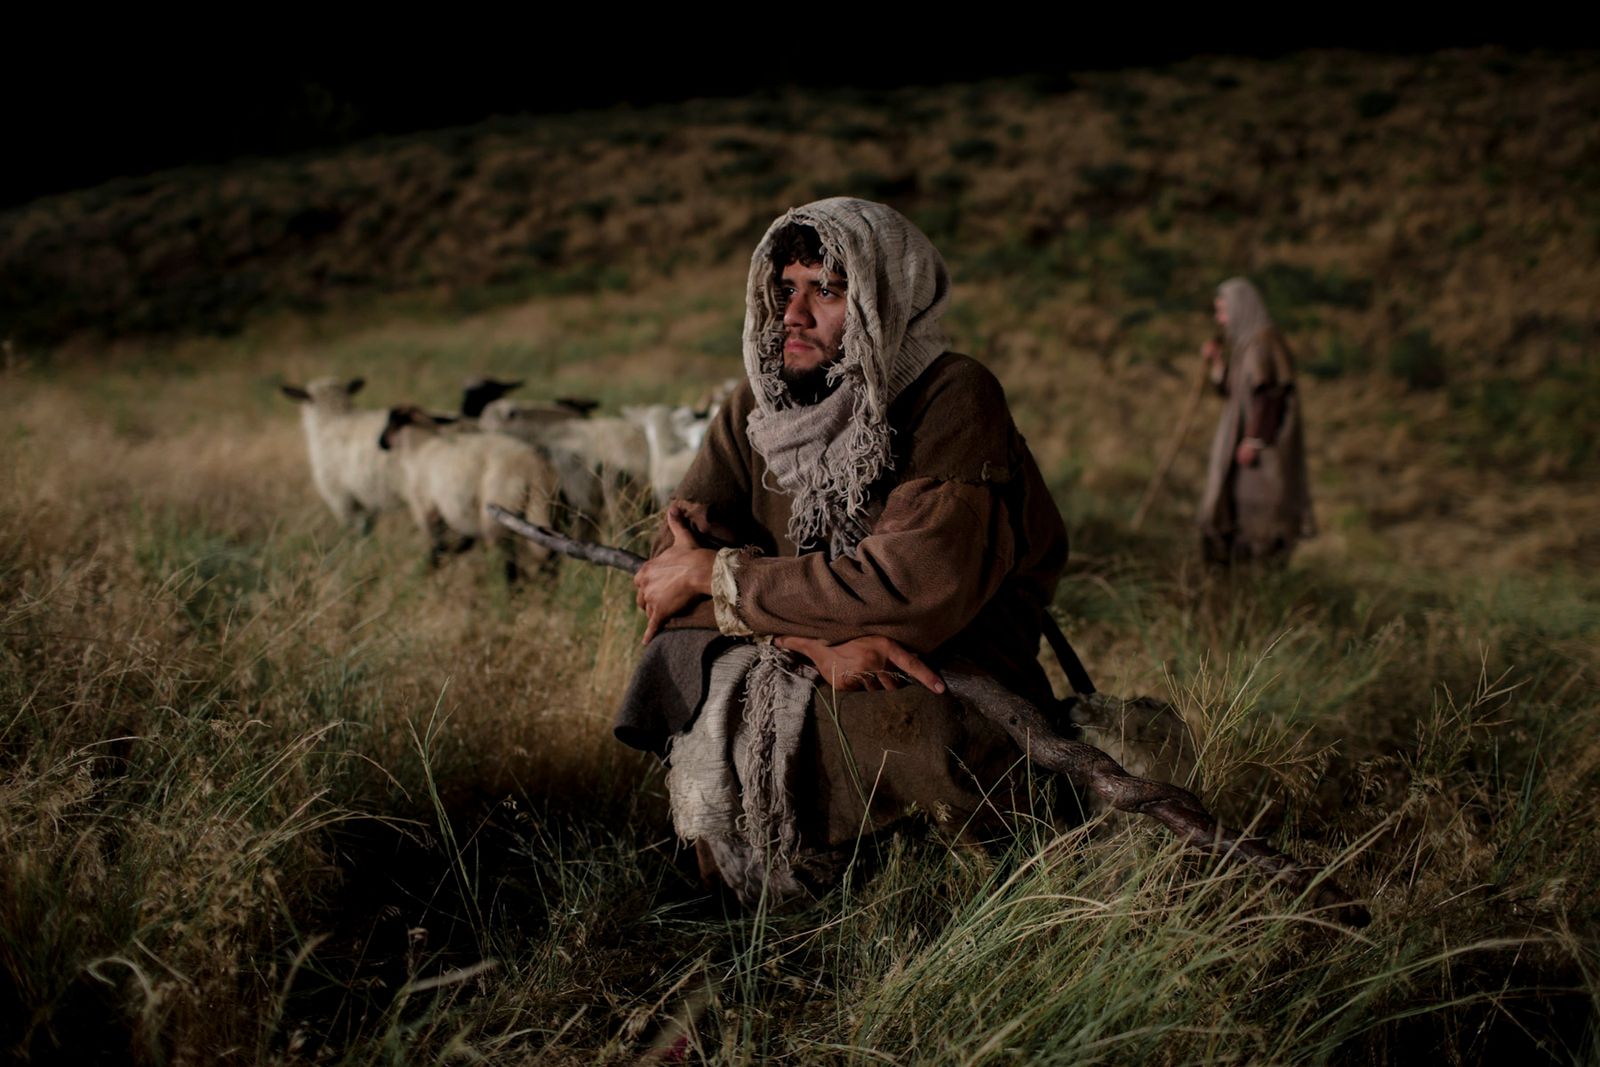 Los pastores velan sobre sus rebaños durante la noche.